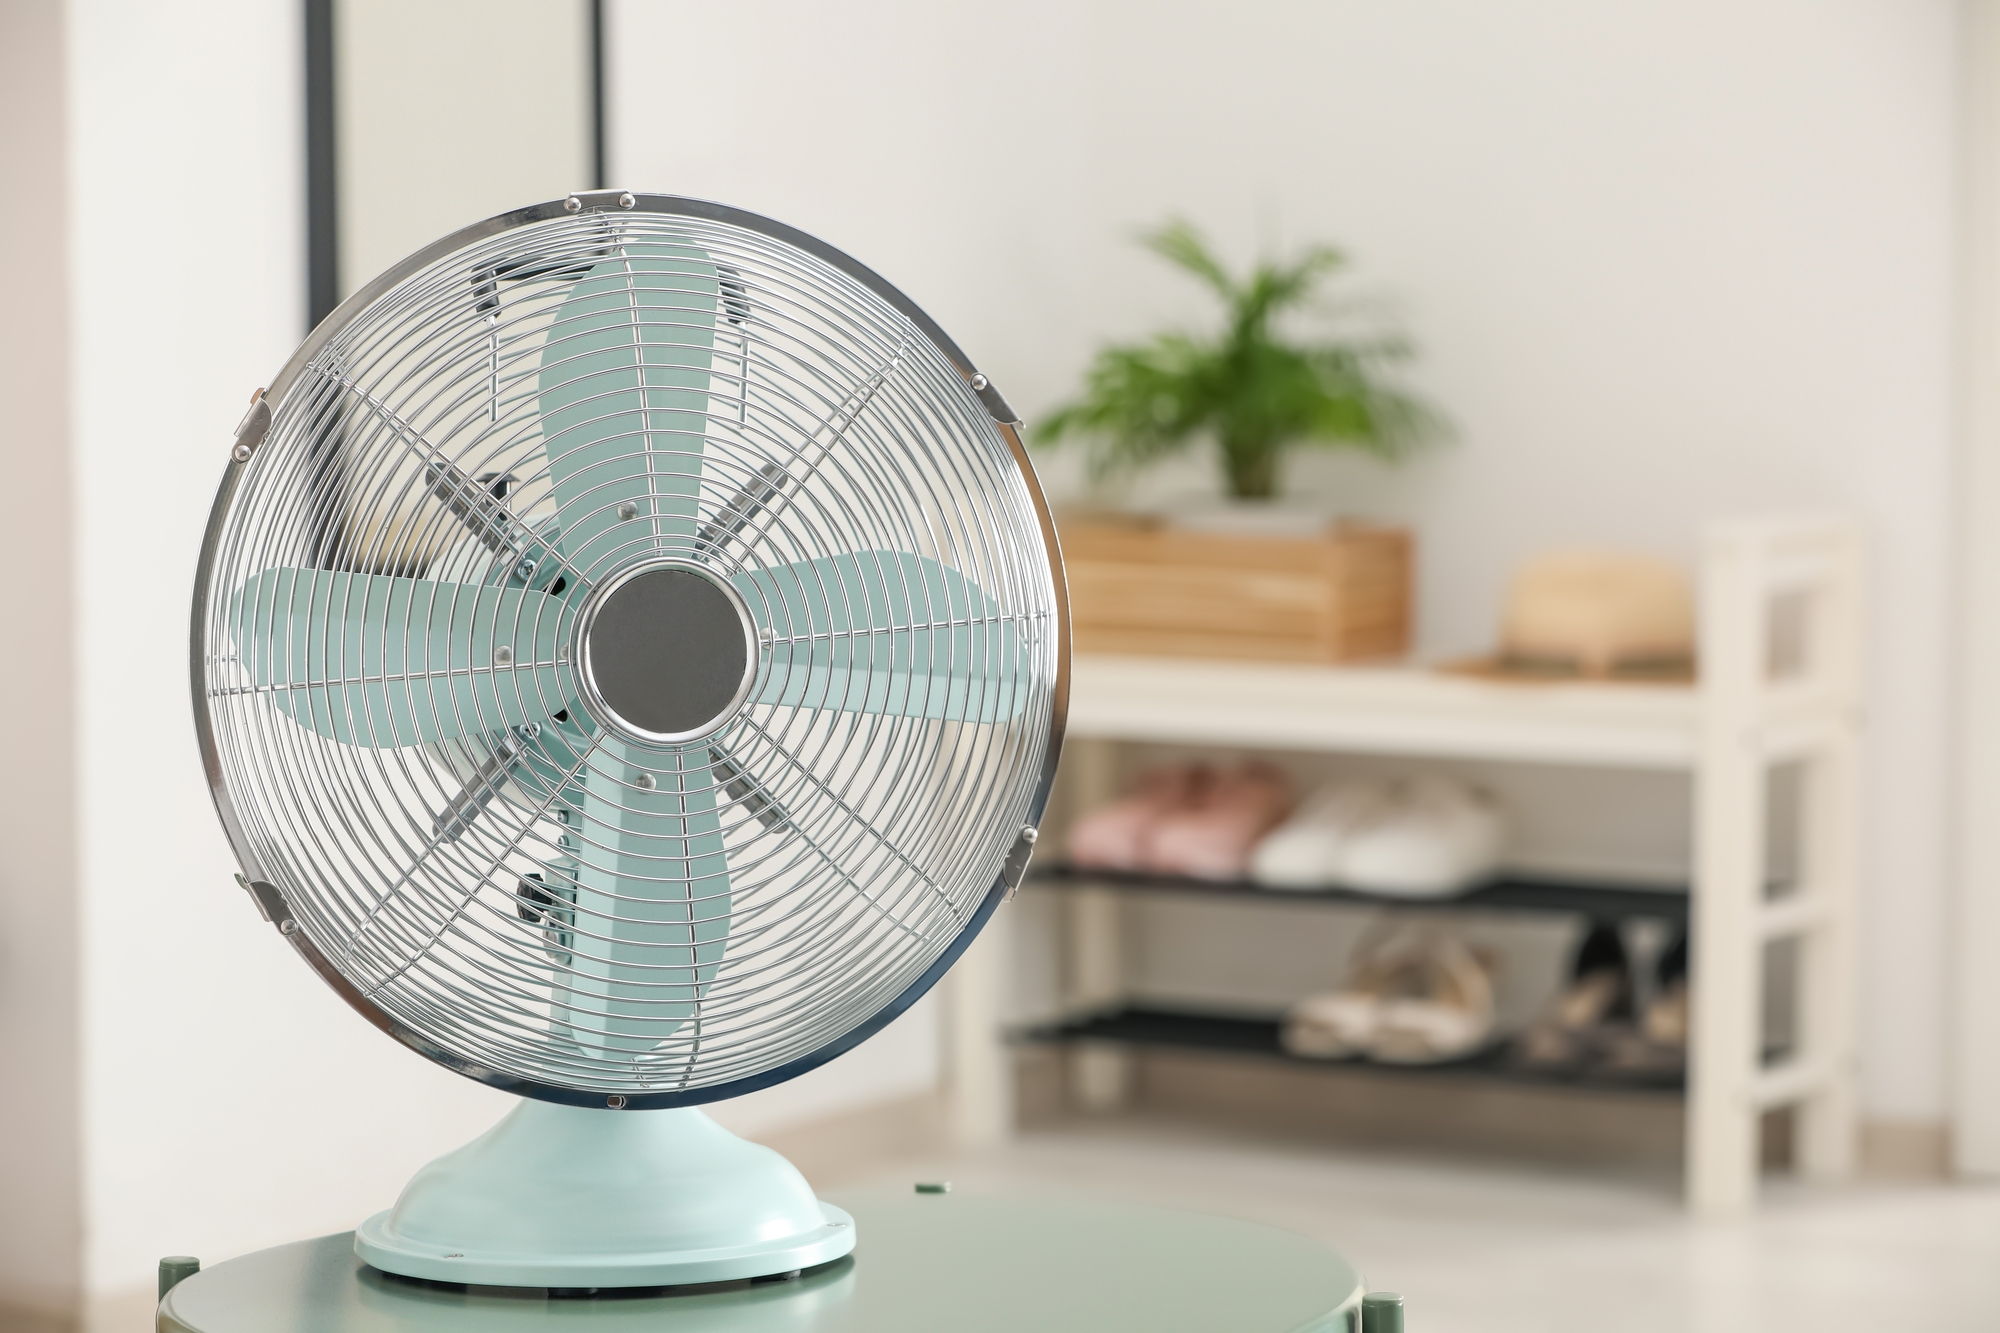 Air frais: Dyson invente le ventilateur sans pales, 15 fois plus